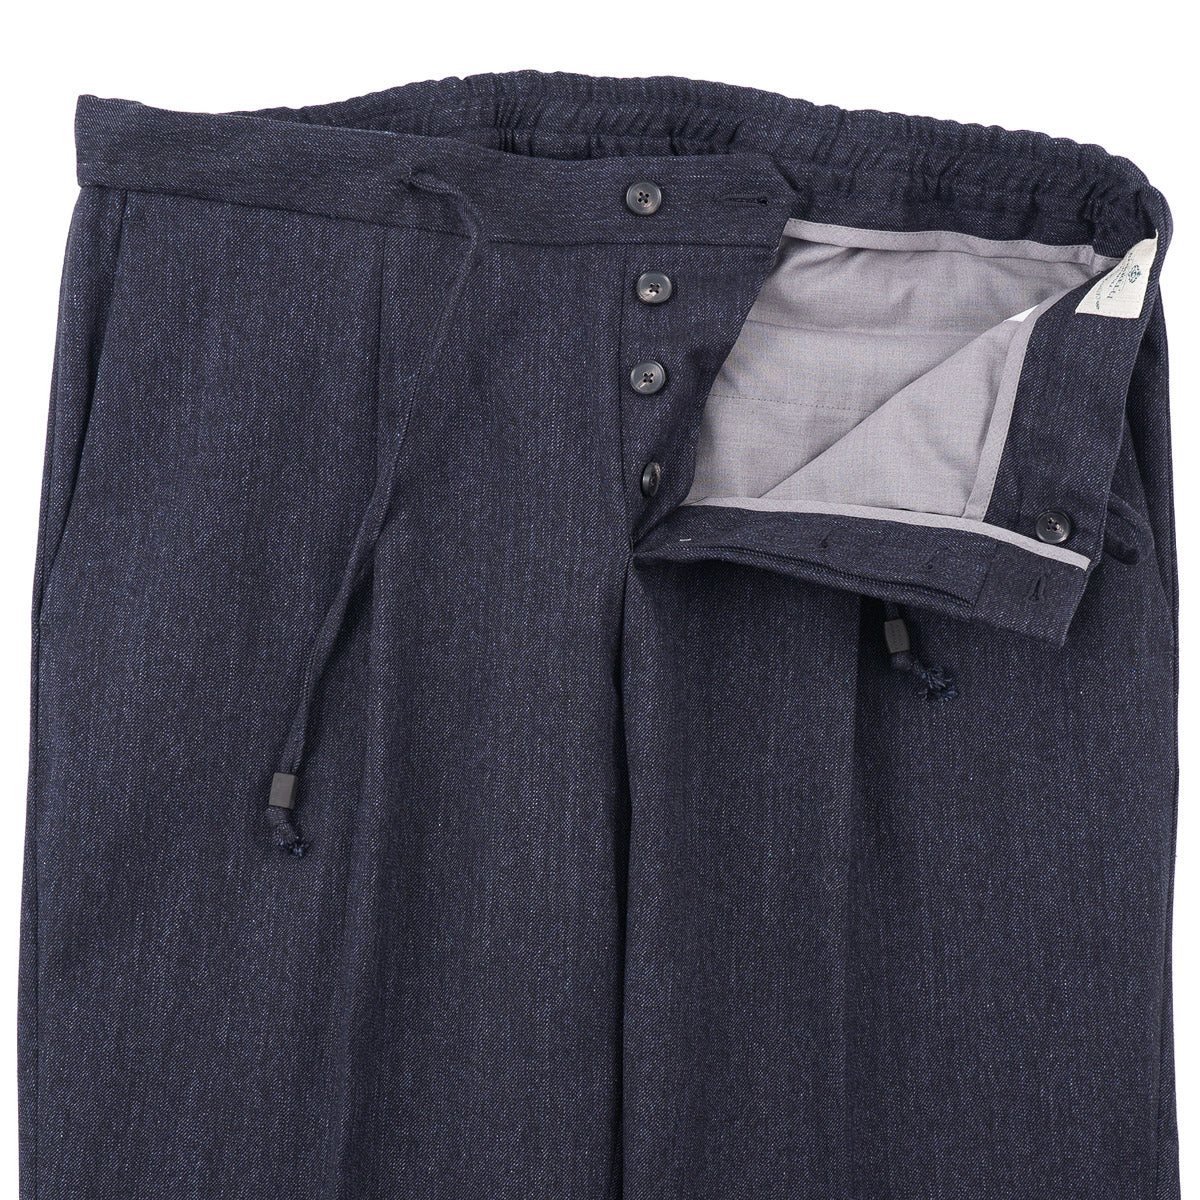 Luigi Borrelli Unlined Denim Cotton Suit - Top Shelf Apparel